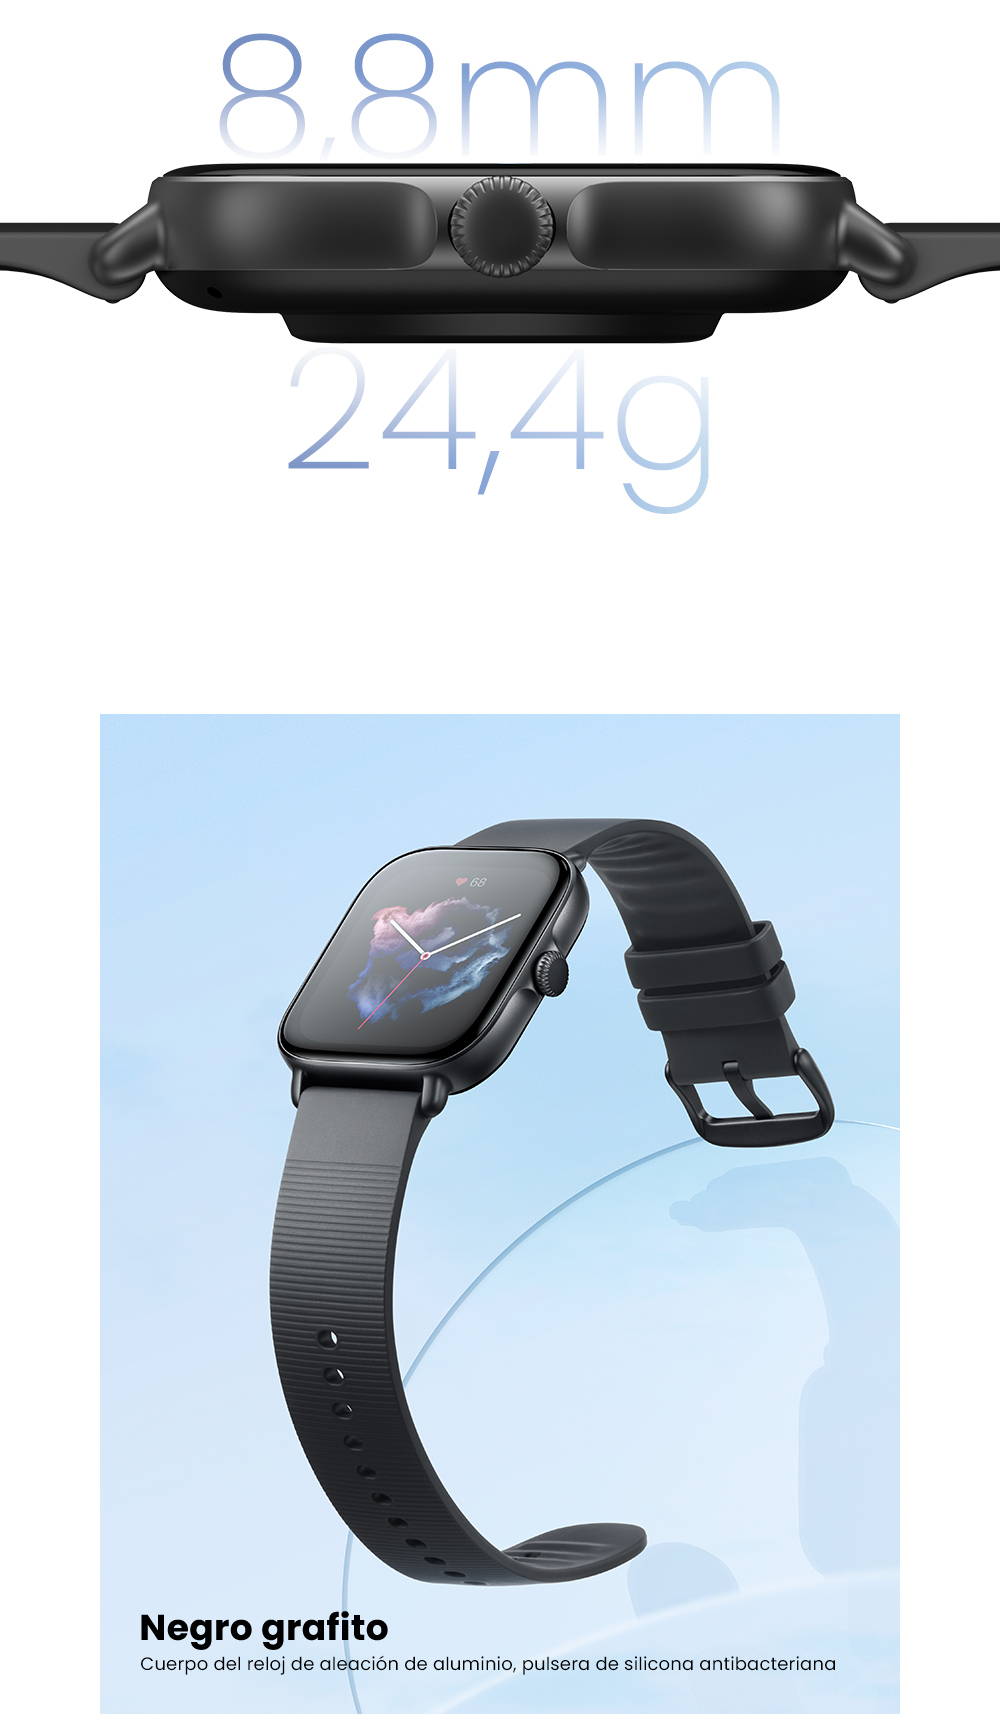  Amazfit GTS 3 - Reloj inteligente para mujer, Alexa integrado,  rastreador de salud y fitness con GPS, 150 modos deportivos, pantalla  AMOLED de 1.75 pulgadas, duración de la batería de 12